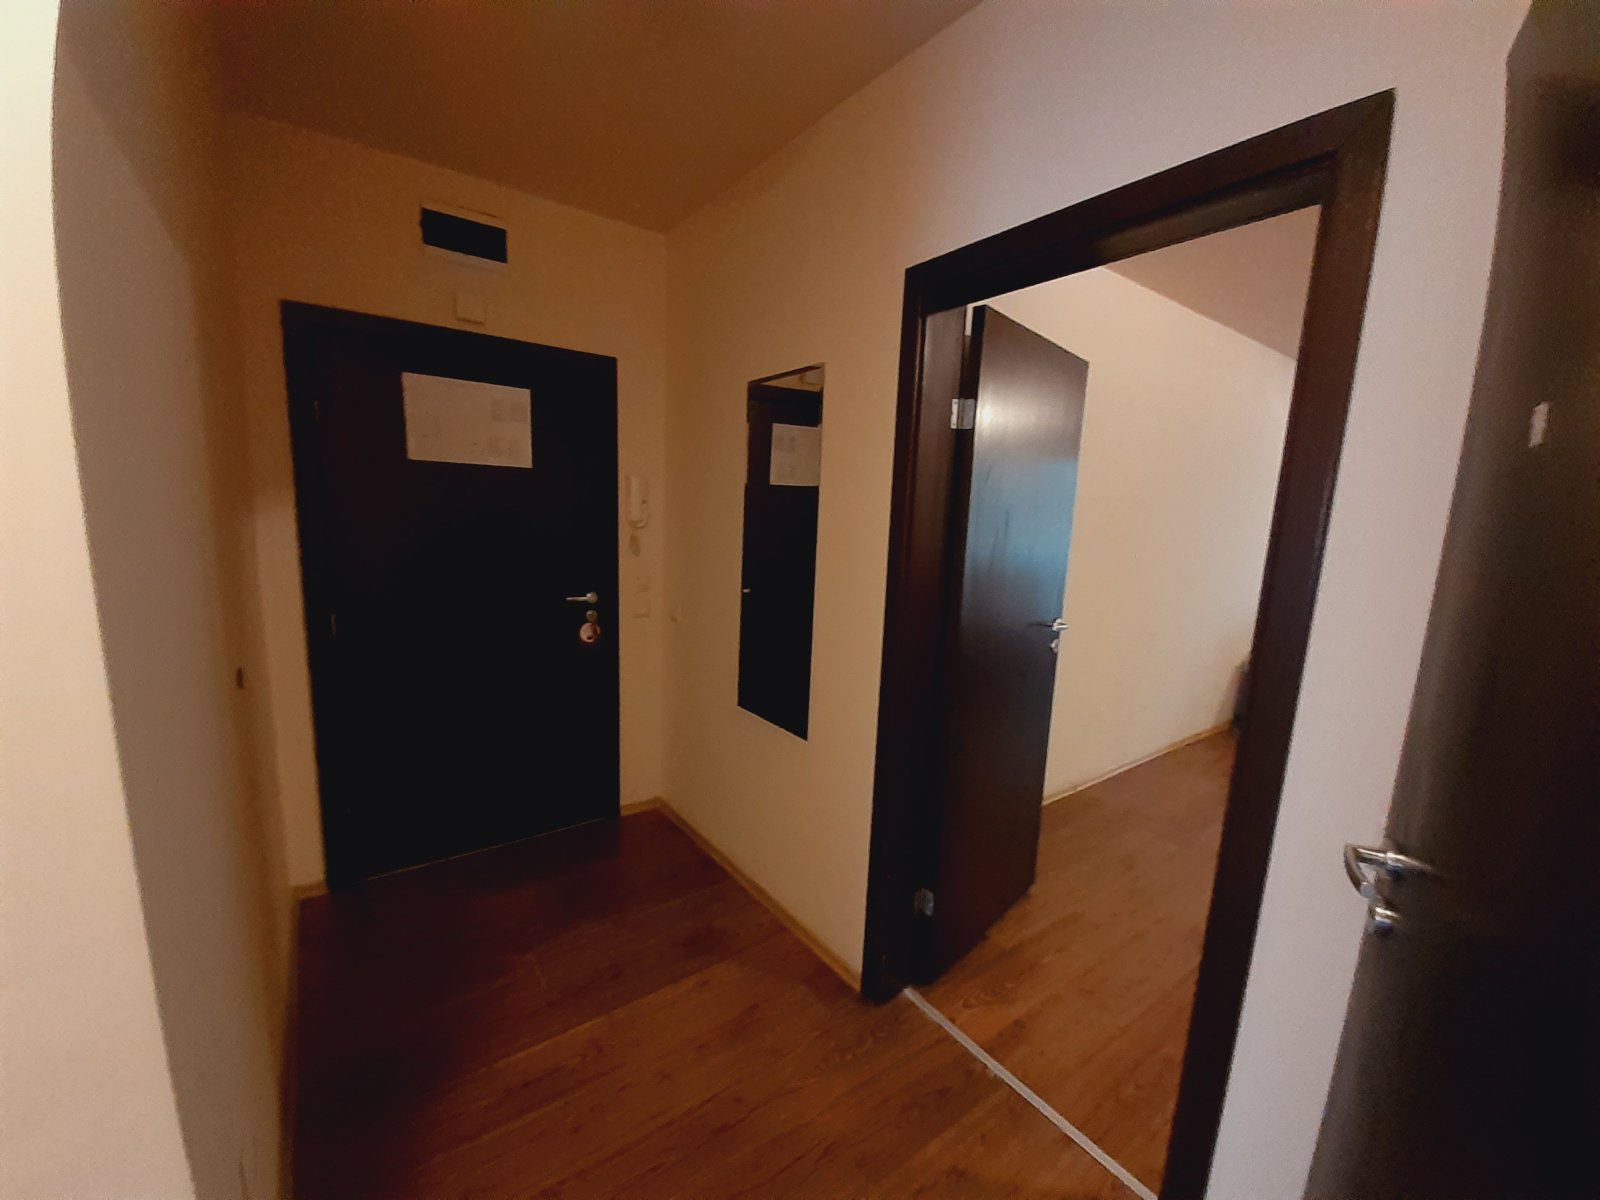 Двустаен апартамент в Банско Роял Тауърс до Ски лифта